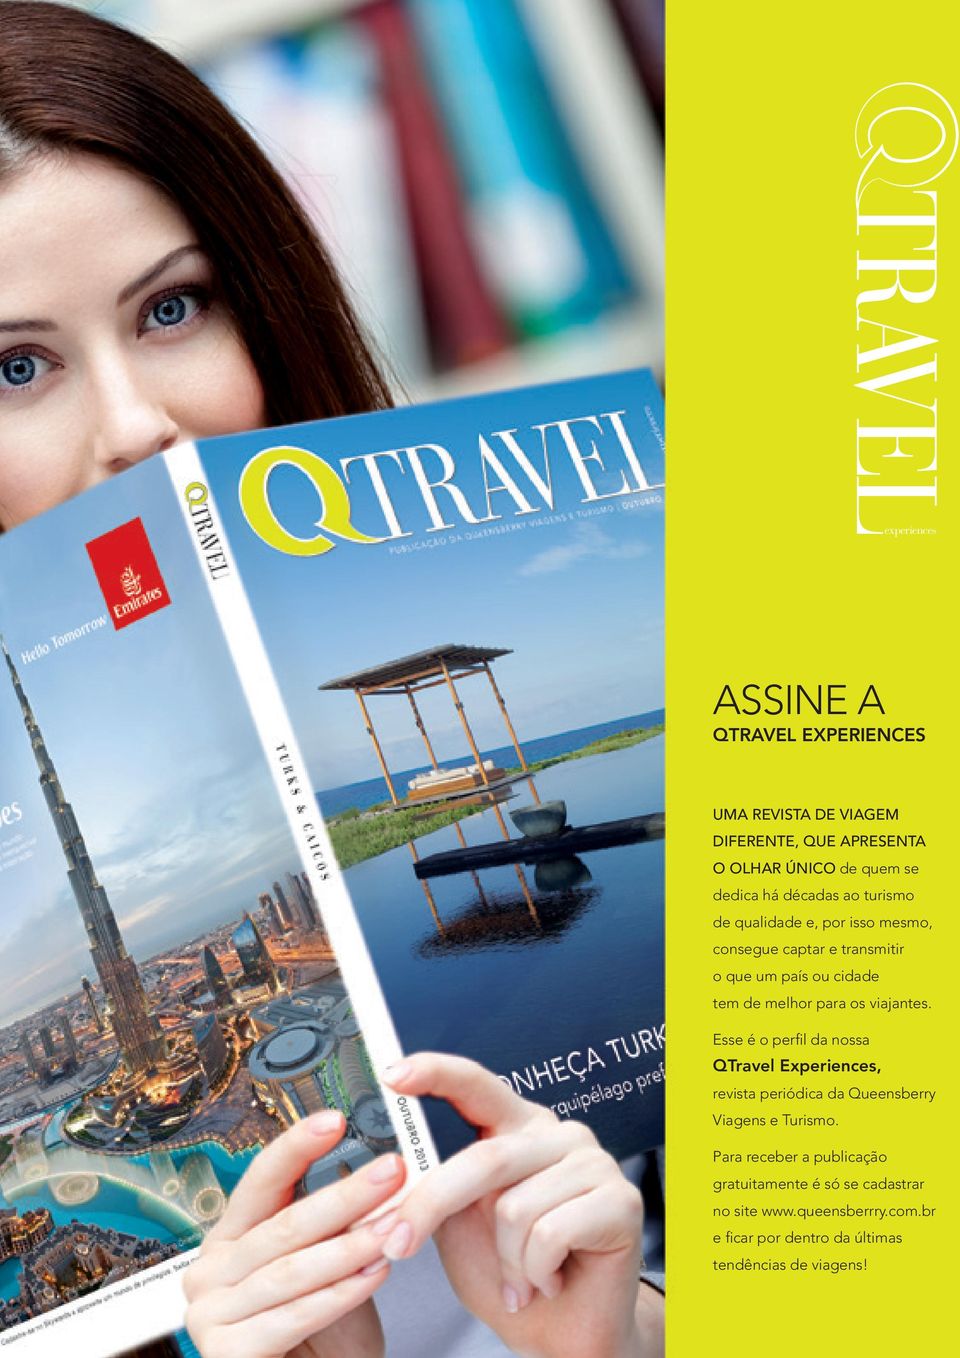 os viajantes. Esse é o perfil da nossa QTravel Experiences, revista periódica da Queensberry Viagens e Turismo.